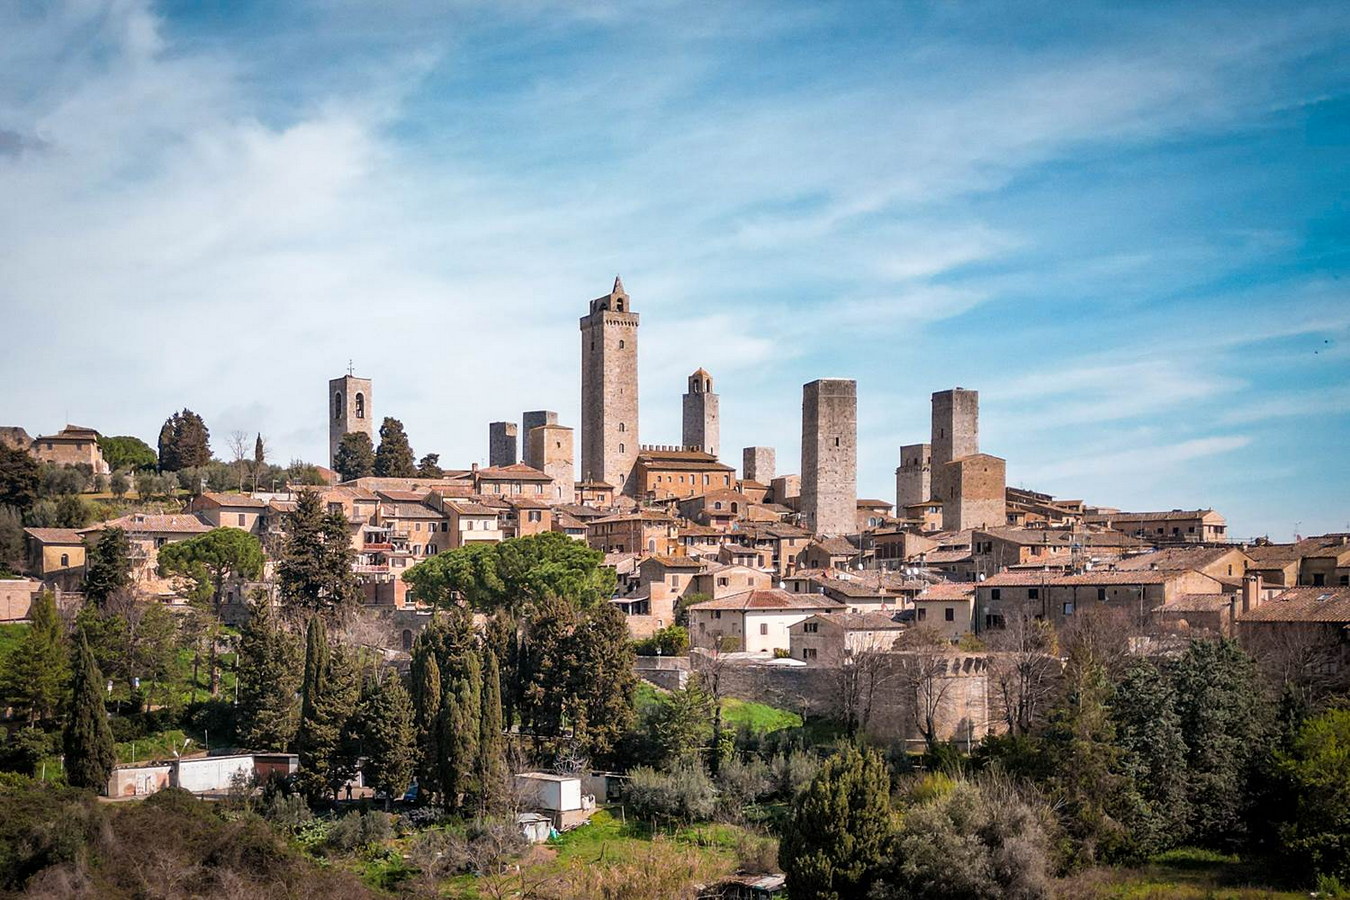 Chùm ảnh: Những tòa nhà ‘chọc trời’ 800 tuổi ở Italia